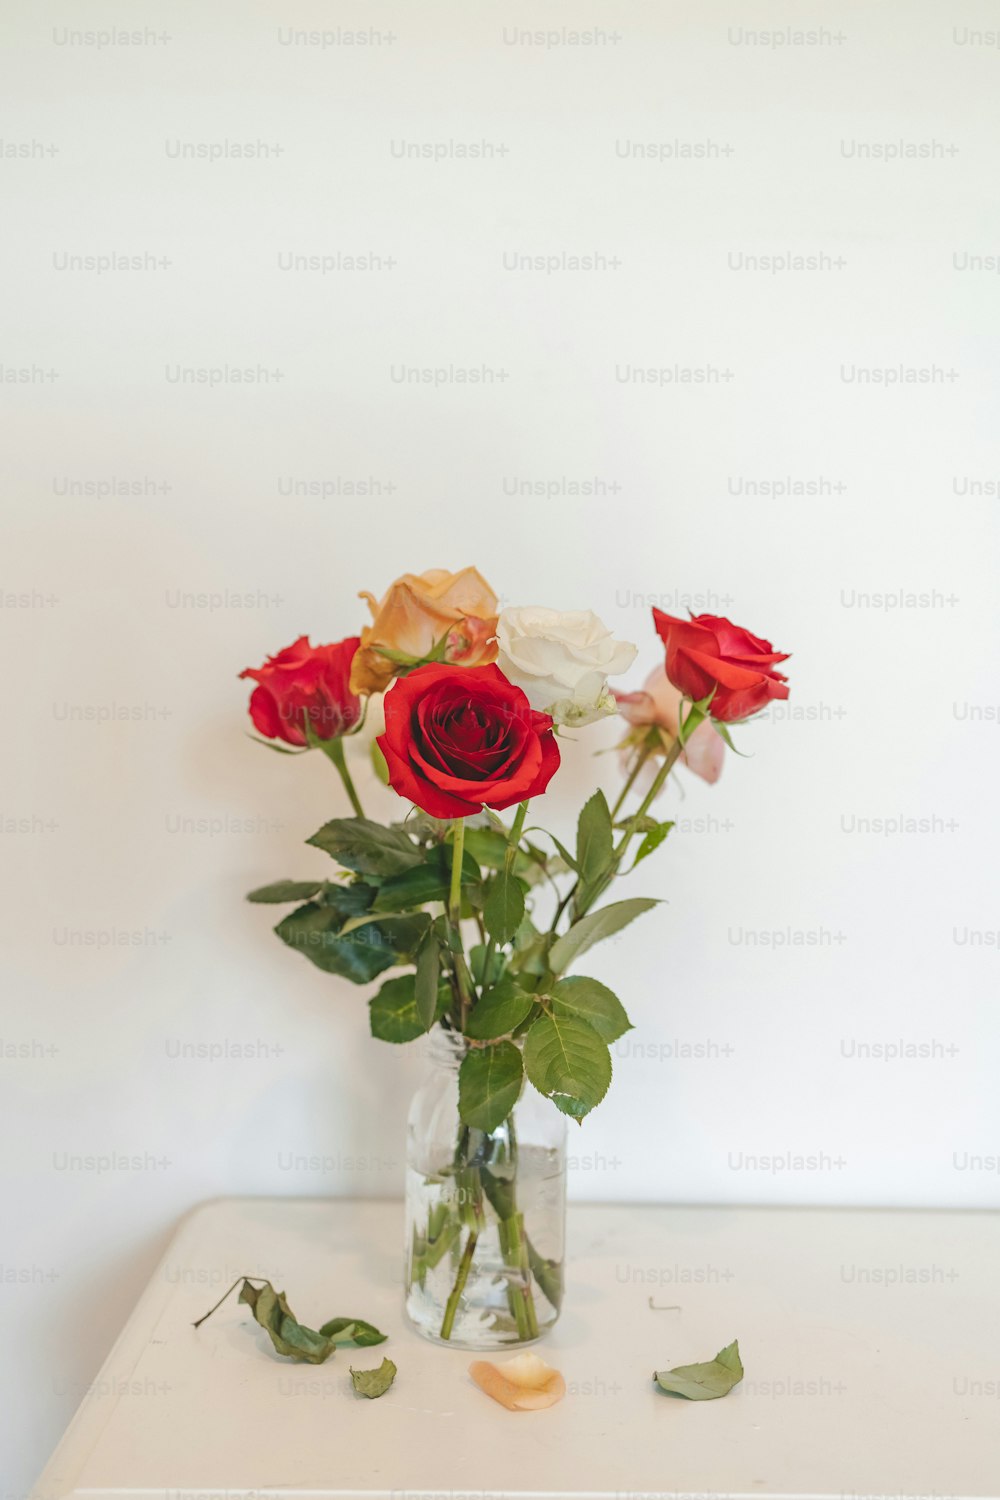 um vaso cheio de rosas vermelhas e brancas em cima de uma mesa